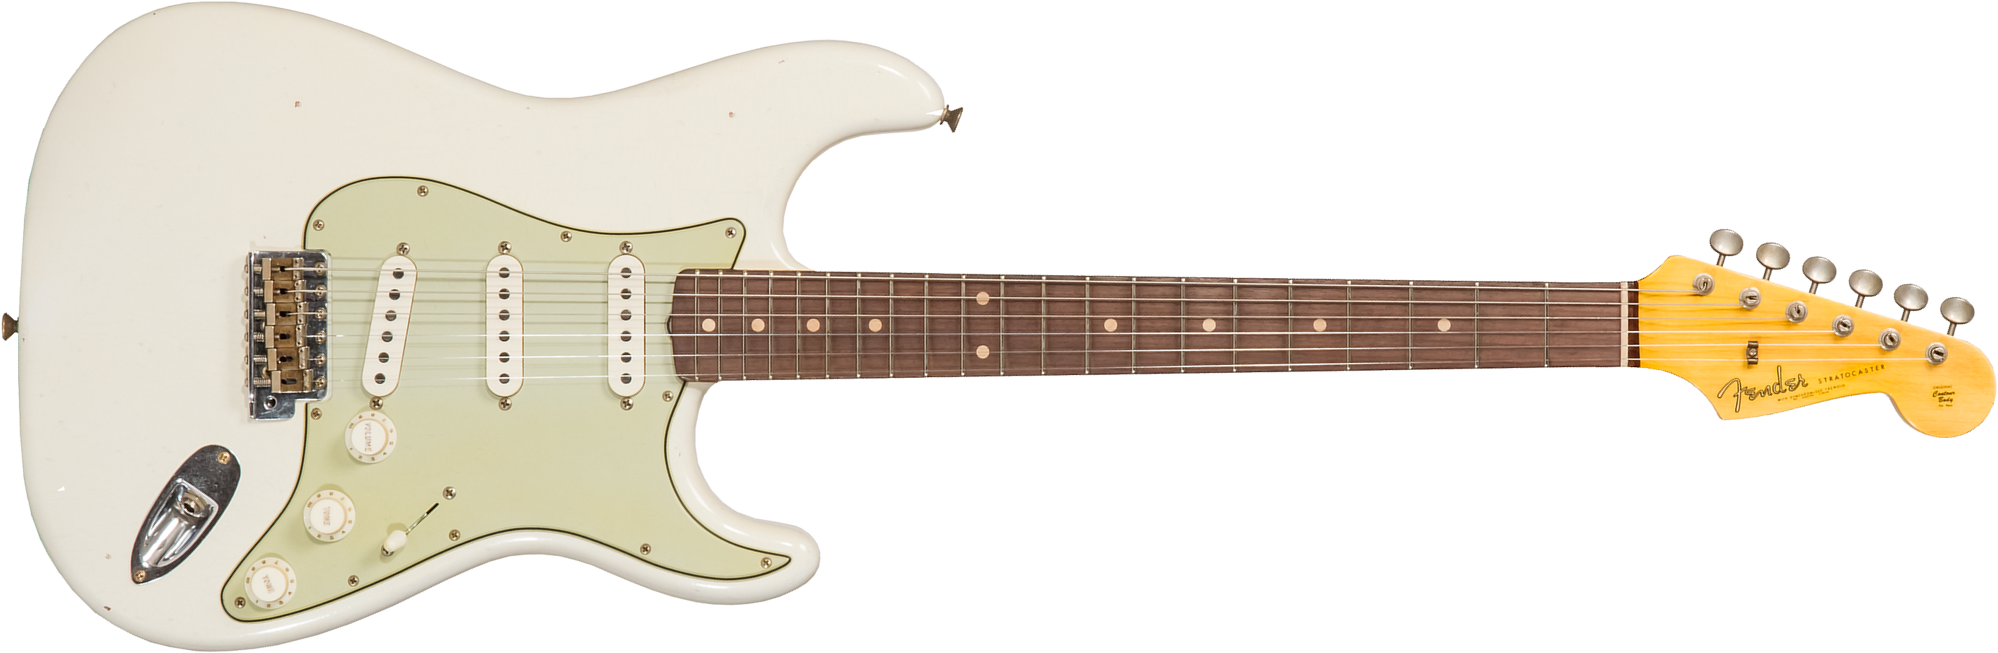 Fender Custom Shop Strat 1962/63 3s Trem Rw #cz565163 - Journeyman Relic Olympic White - Guitare Électrique Forme Str - Main picture